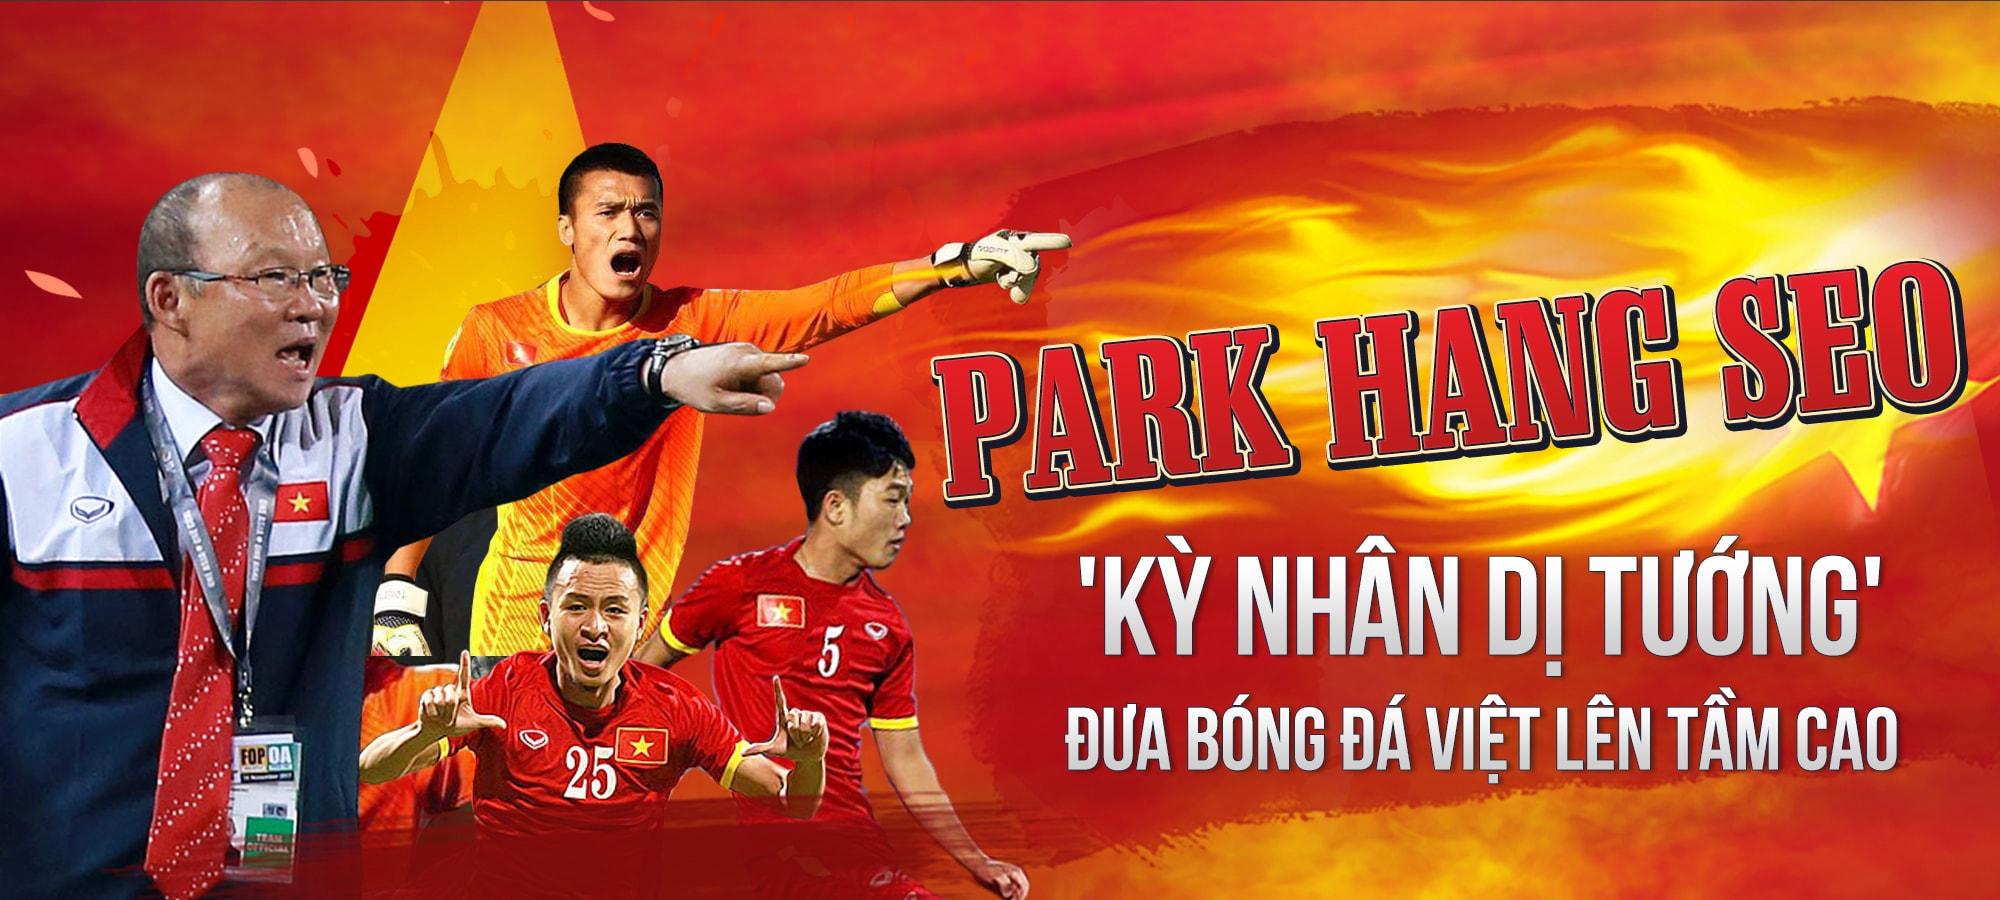 Giải mã tướng số người viết sử vàng cho bóng đá Việt Nam - Park Hang Seo 'kỳ nhân dị tướng'